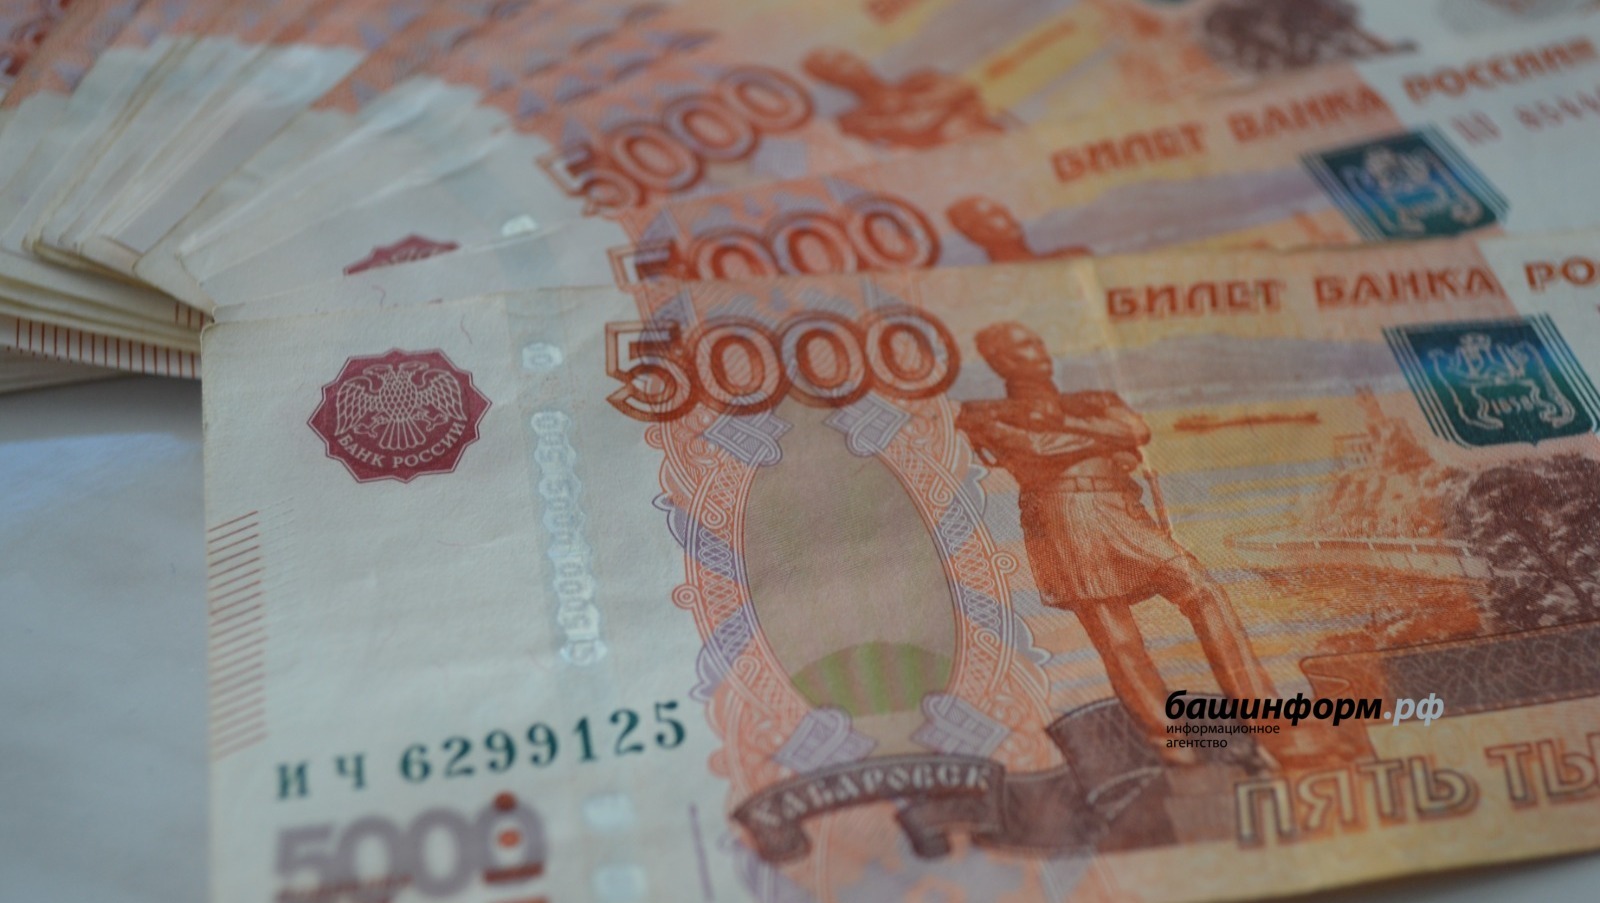 Жительница Башкирии хотела заработать на «лайках», но лишилась более 100 тысяч рублей